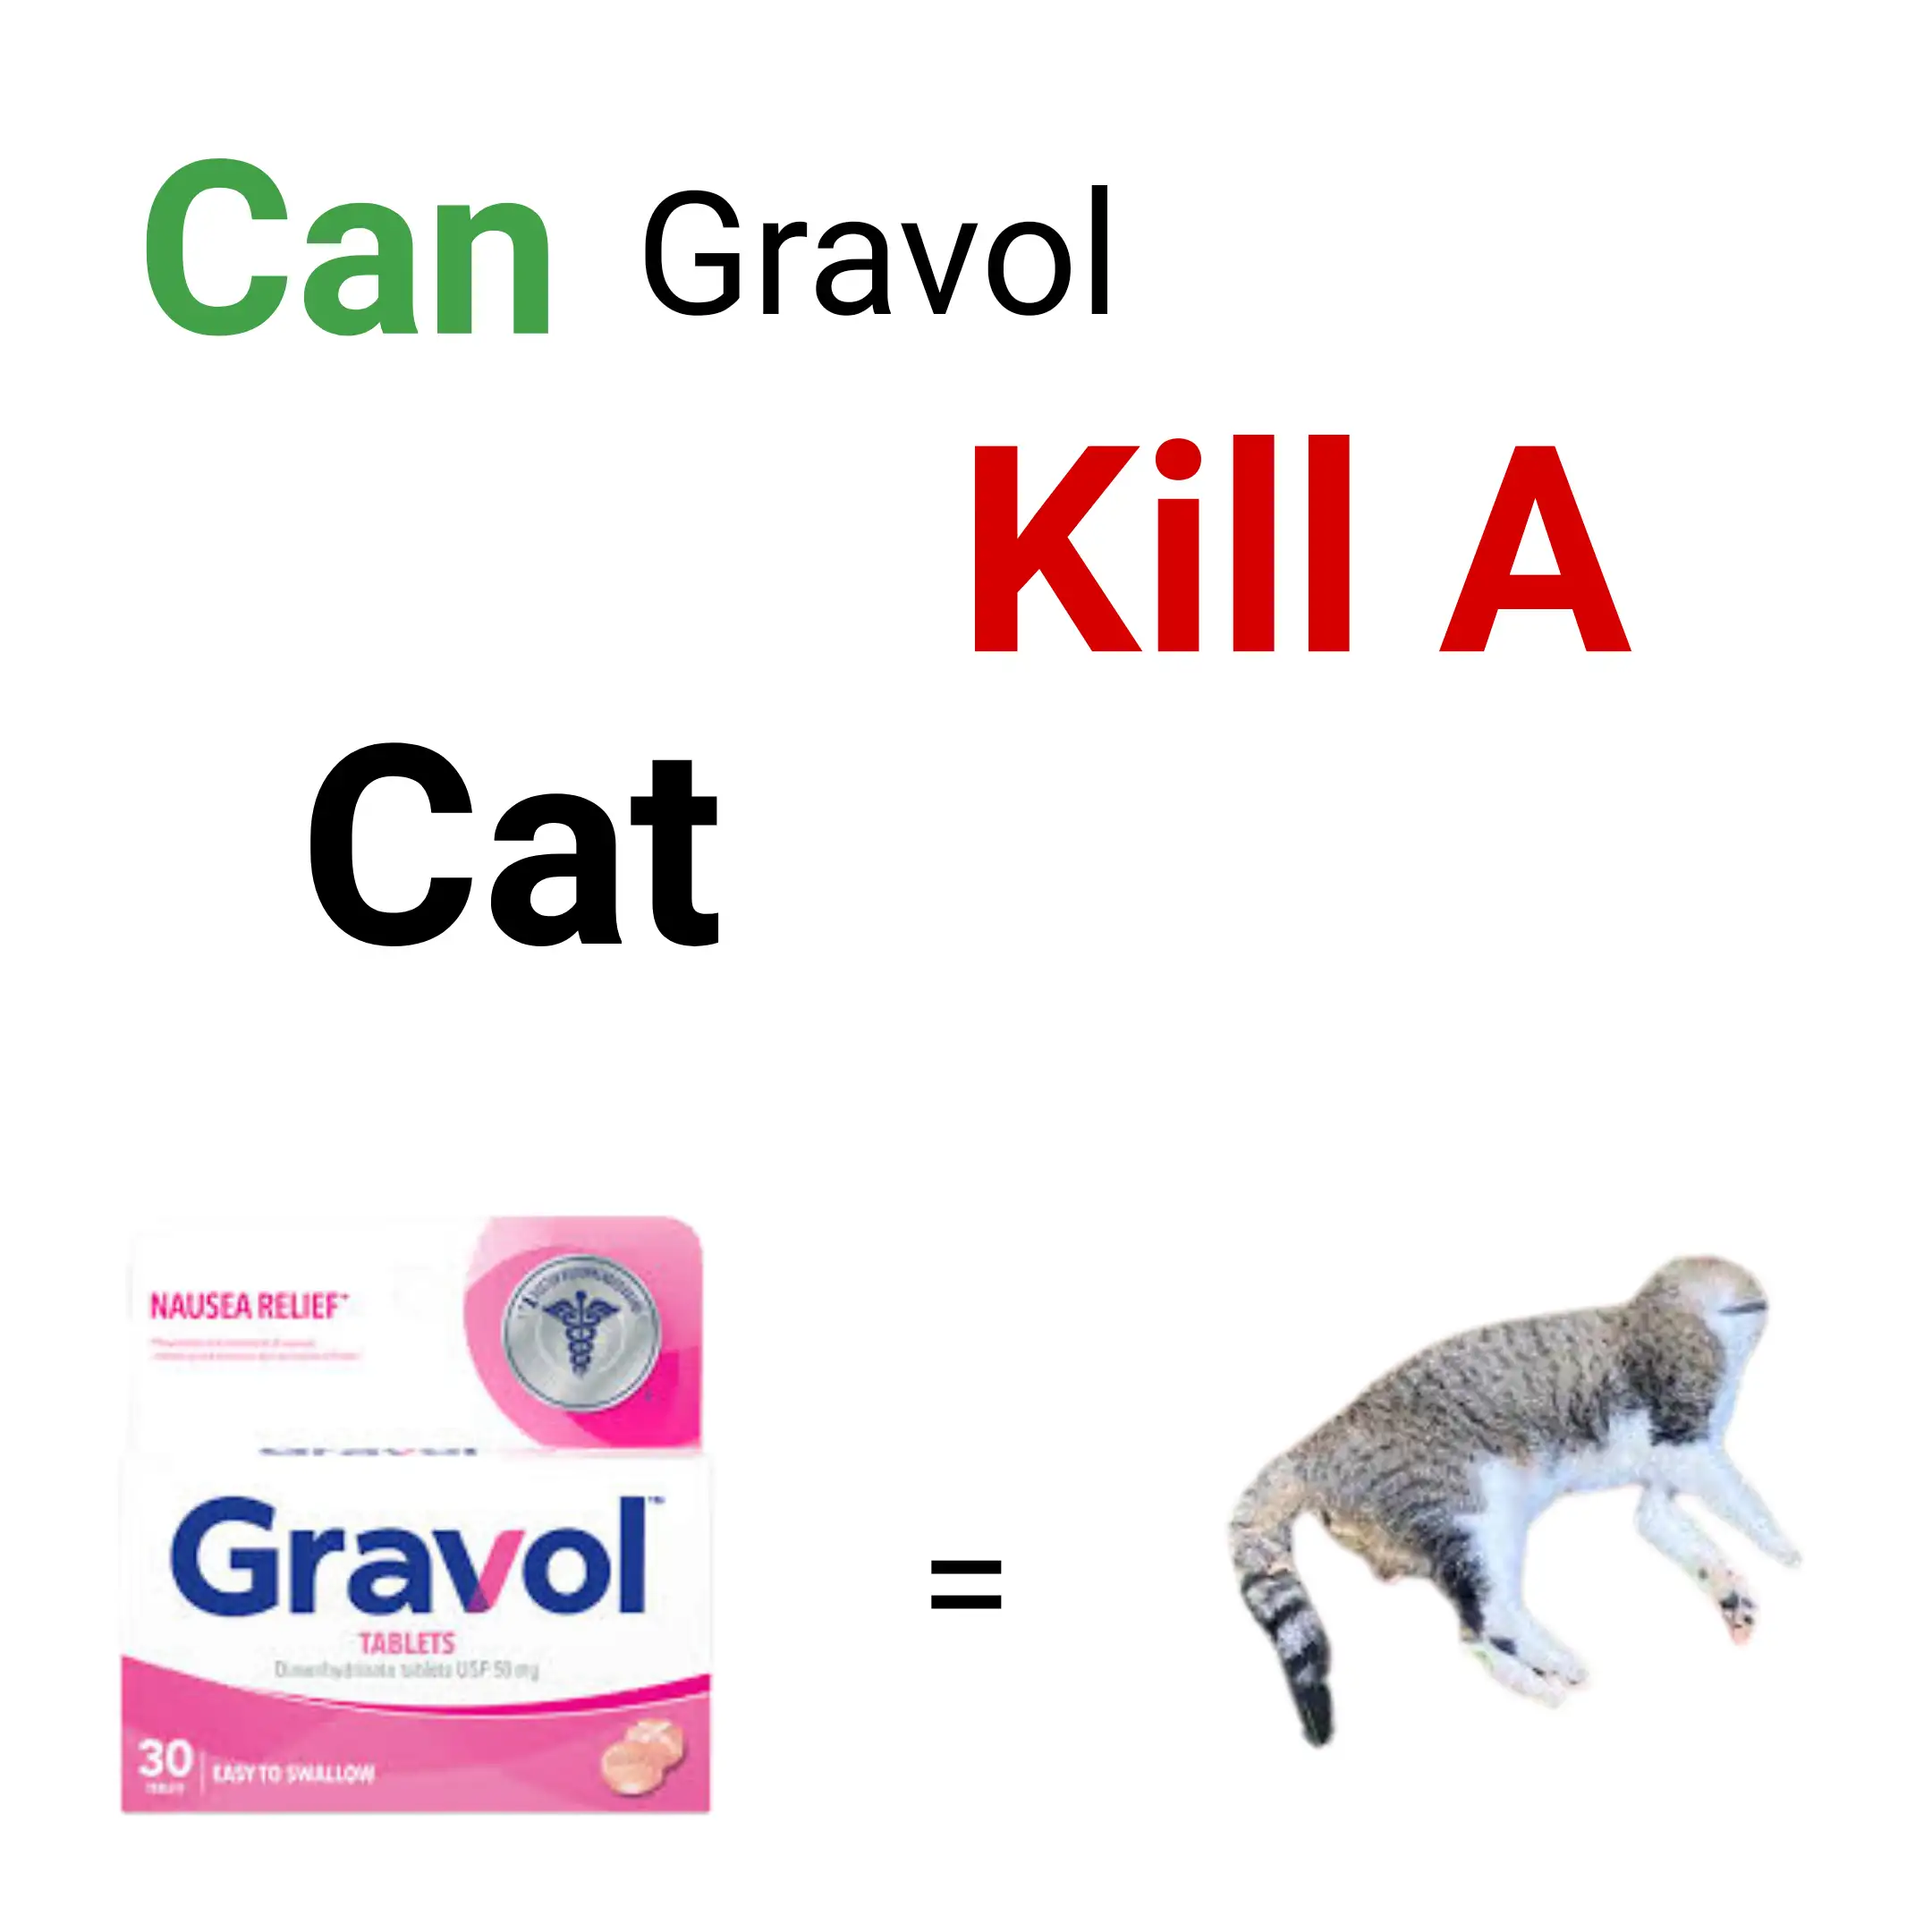 Can Gravol Kill A Cat?